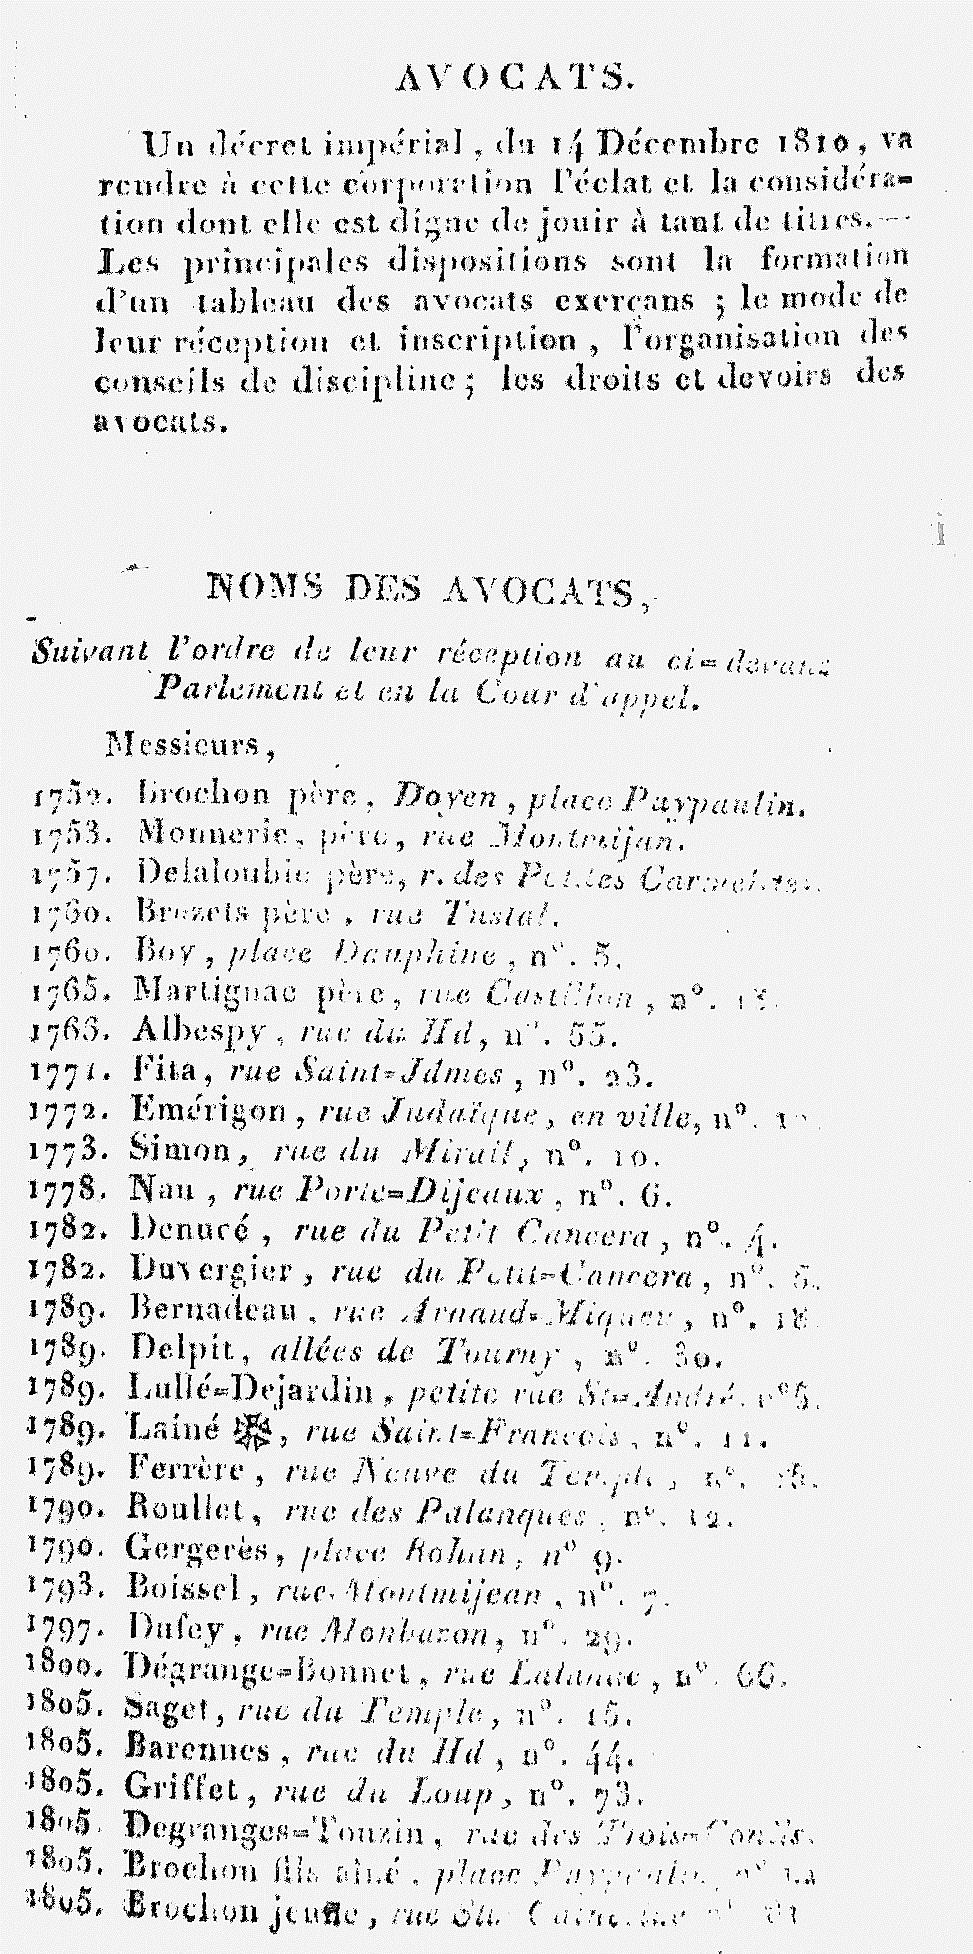  à partir de 1811, le tableau devient celui de l'Ordre des avocats à la Cour impériale de Bordeaux 